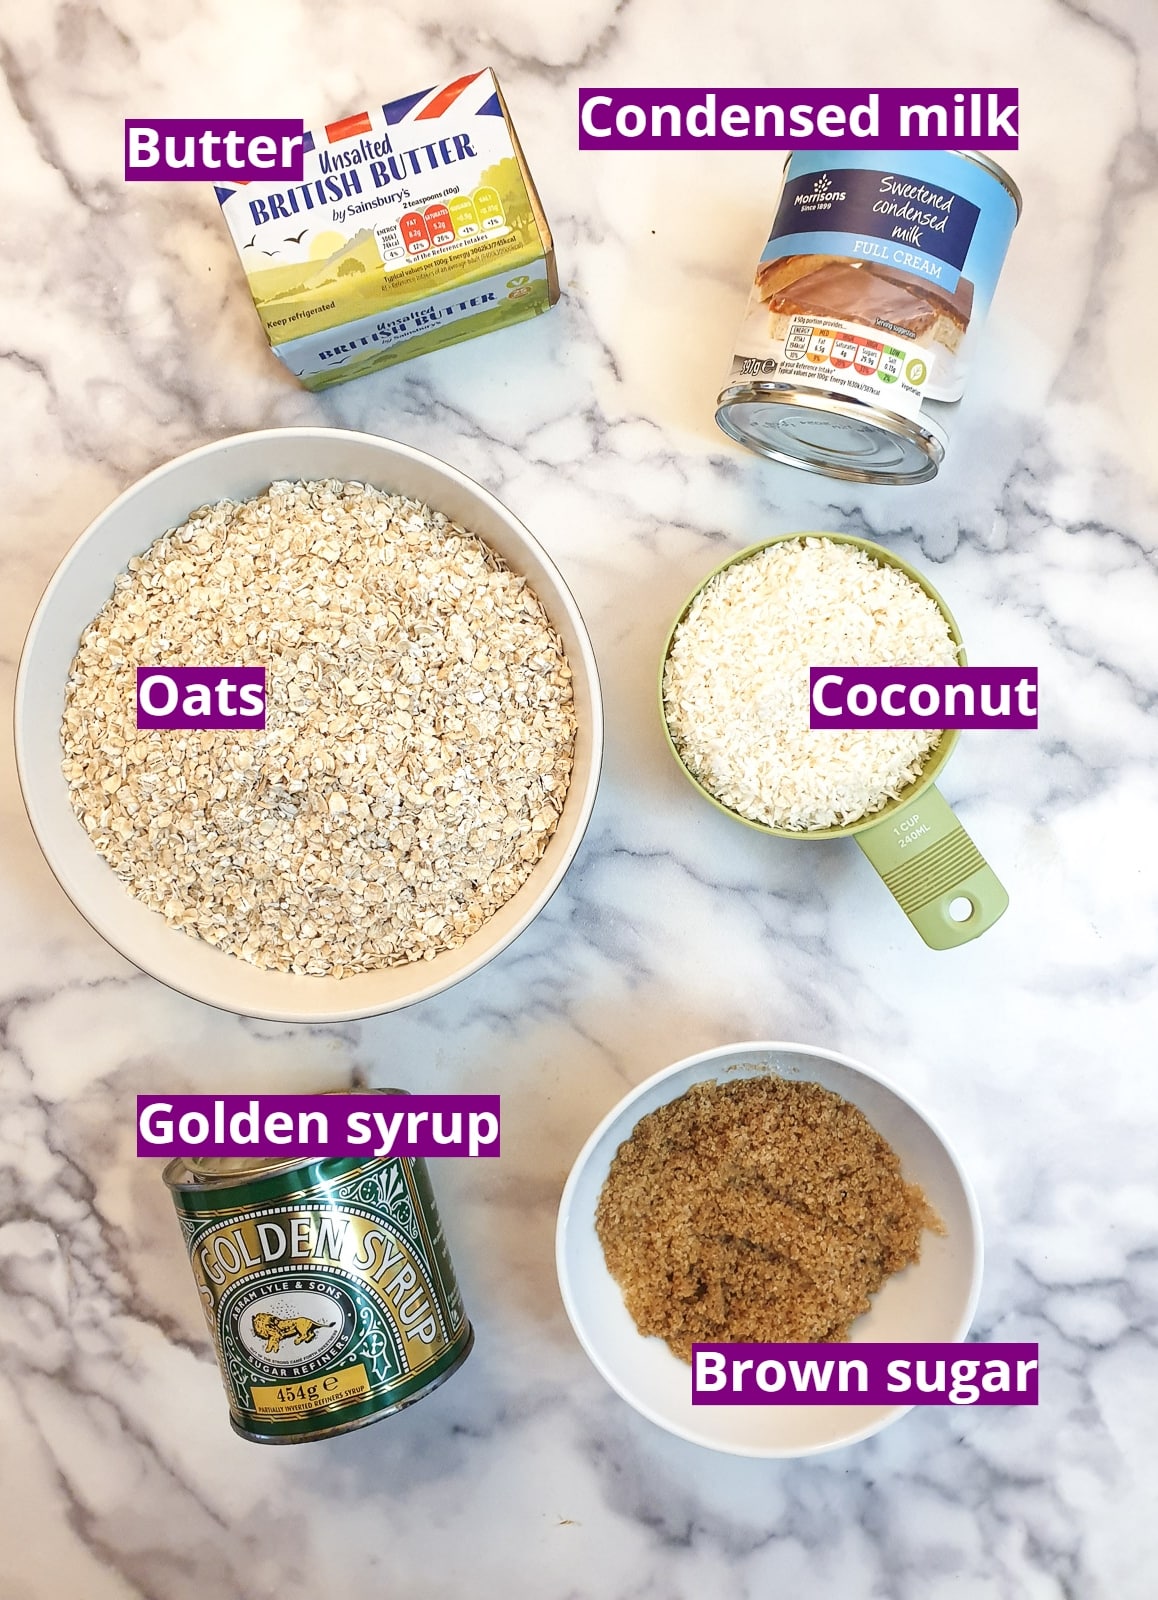 Ingredients for condensed milk flapjacks.